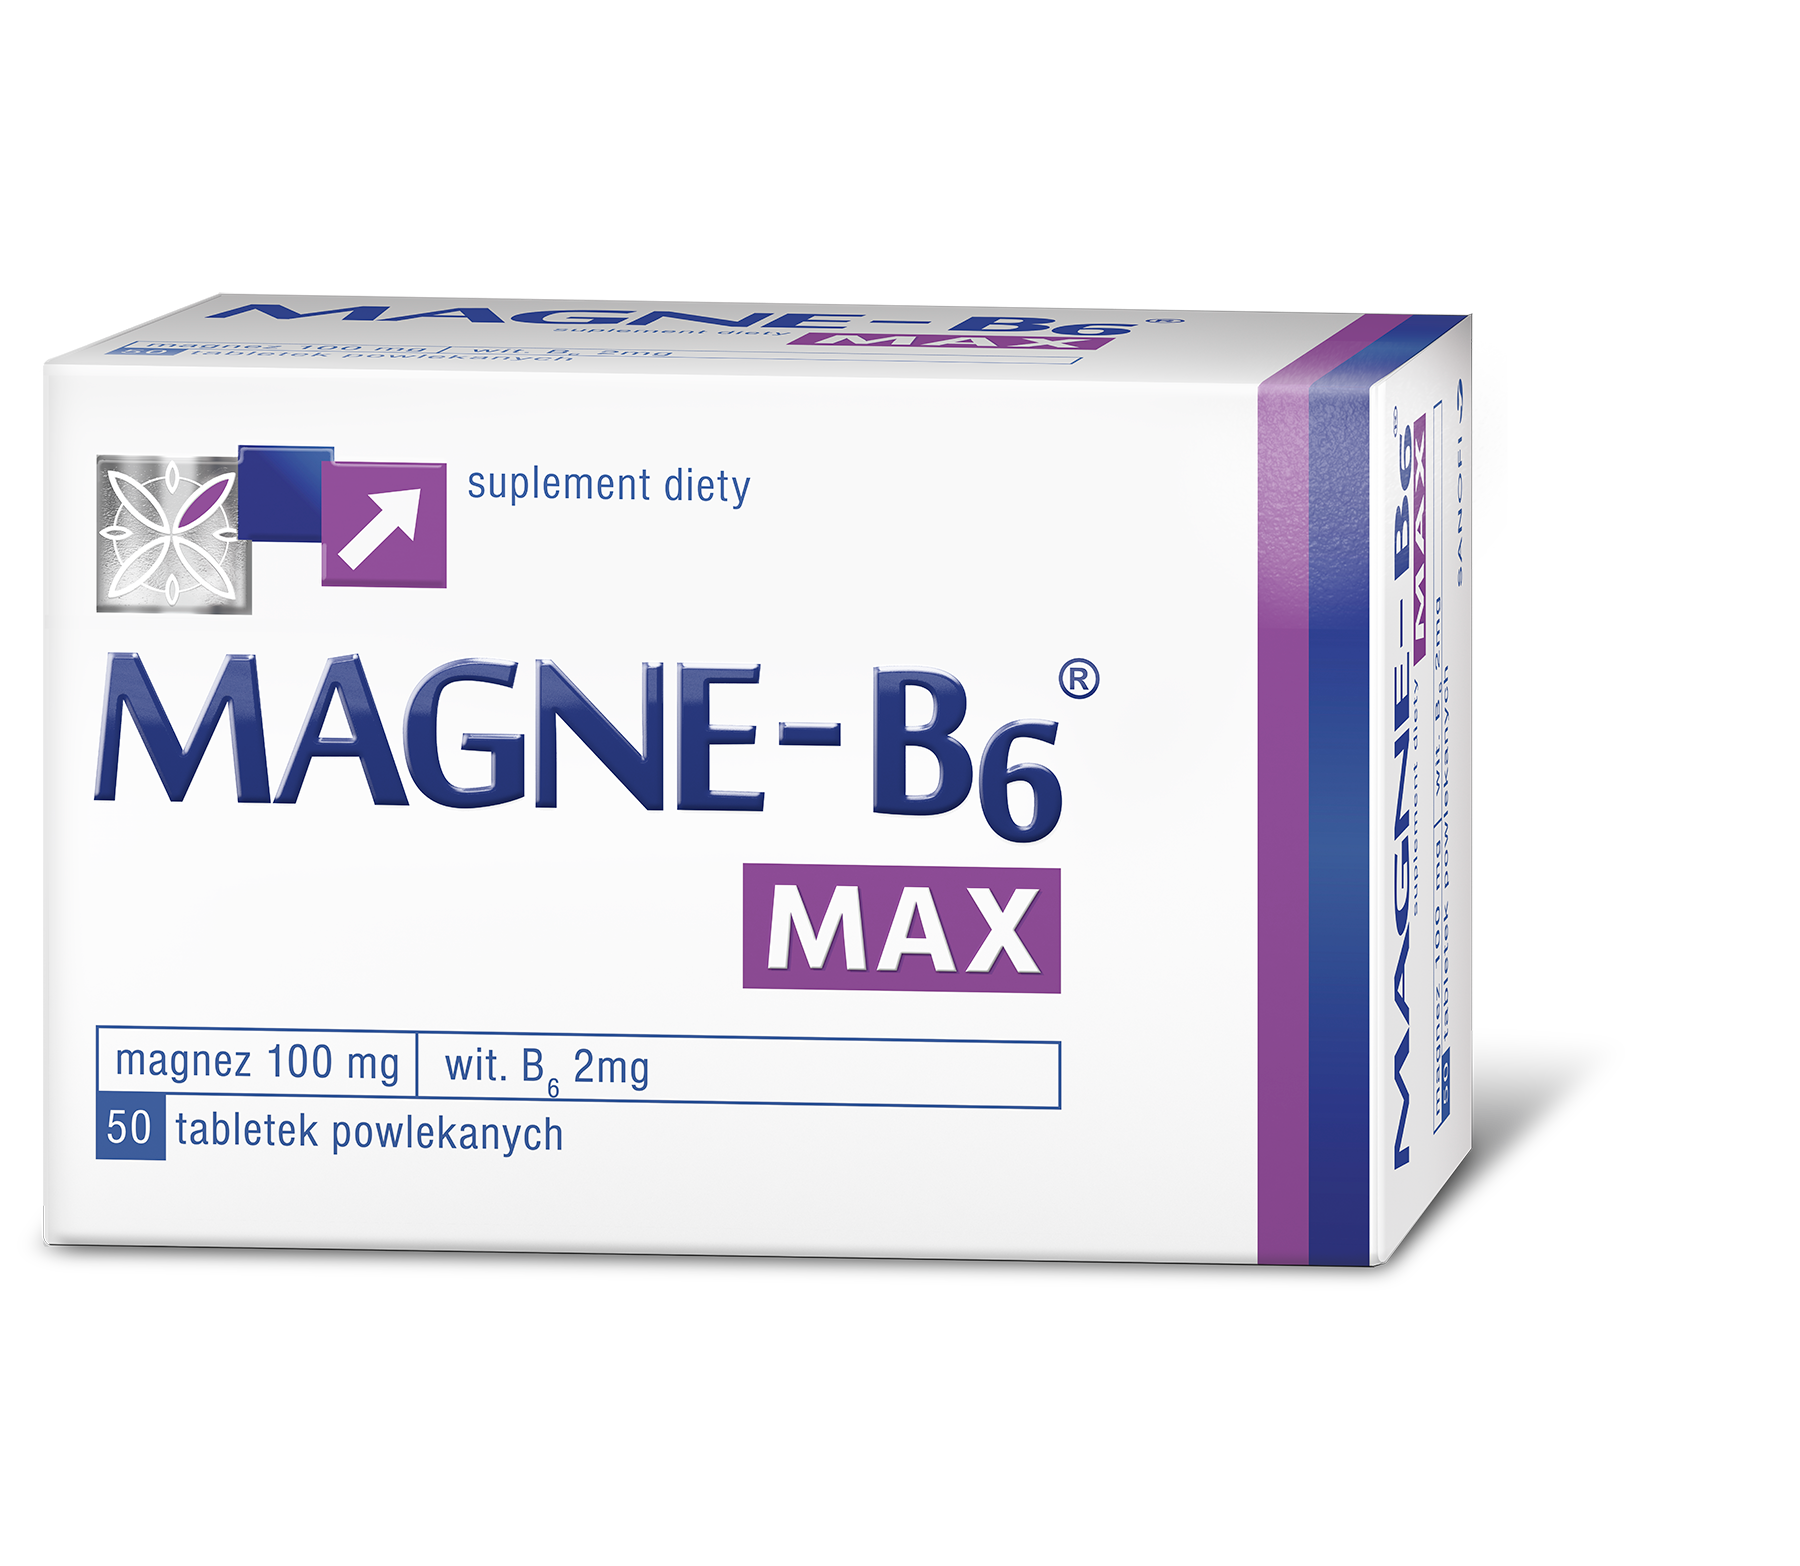 magne-b6-max